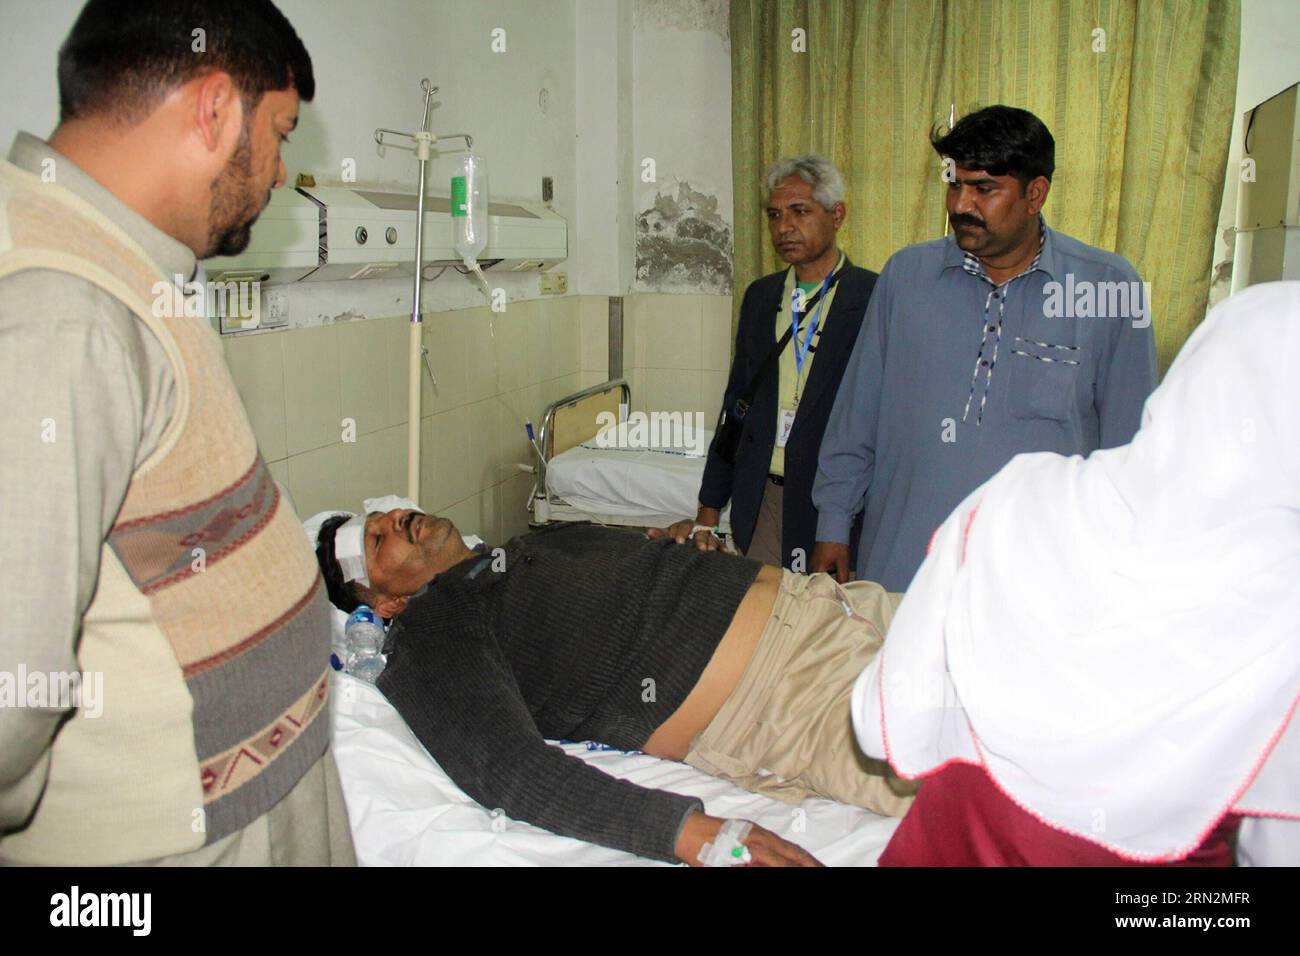 (150315) -- LAHORE, le 15 mars 2015 -- un policier blessé reçoit un traitement médical dans un hôpital à la suite d'attentats suicides à la bombe perpétrés contre des églises dans l'est du Pakistan à Lahore le 15 mars 2015. Au moins 14 personnes ont été tuées et 78 autres blessées lorsque deux kamikazes se sont fait exploser dimanche à l entrée d églises dans la ville de Lahore, dans l est du Pakistan, ont indiqué des sources hospitalières. PAKISTAN-LAHORE-ATTENTAT-SUICIDE JamilxAhmed PUBLICATIONxNOTxINxCHN Lahore Mars 15 2015 un policier blessé reçoit un traitement médical DANS un hôpital après des attentats suicides à la bombe CONTRE des églises dans l'est du Pakistan Banque D'Images